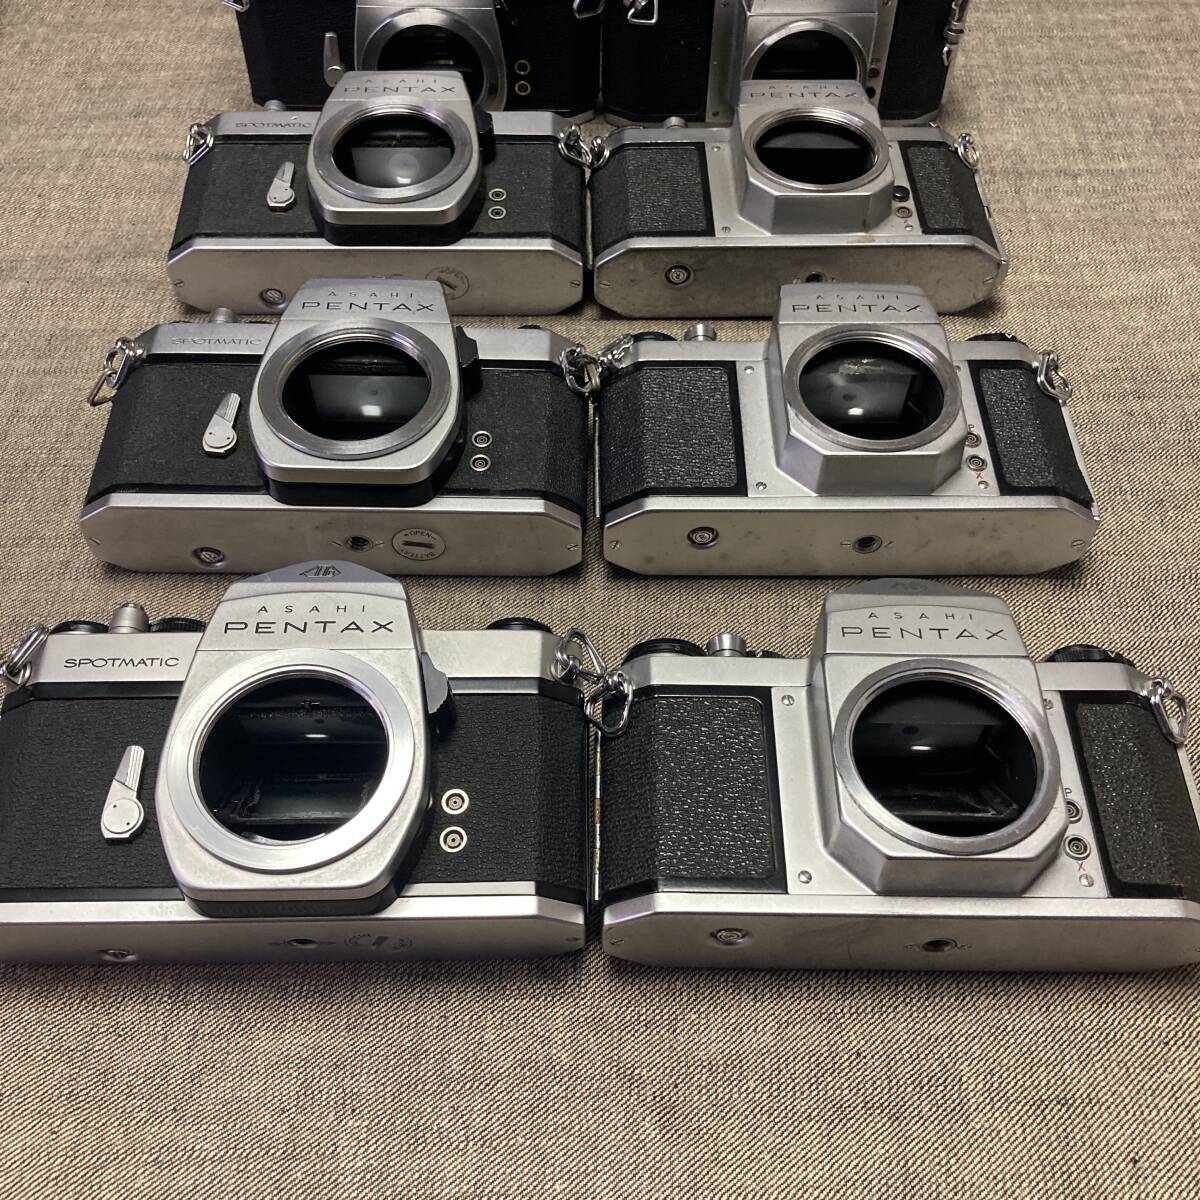 M42 マウントカメラ 11台セット / SL , SV , S2 , SPなど / TAKUMAR ペンタックス タクマー / フィルムカメラ_画像3